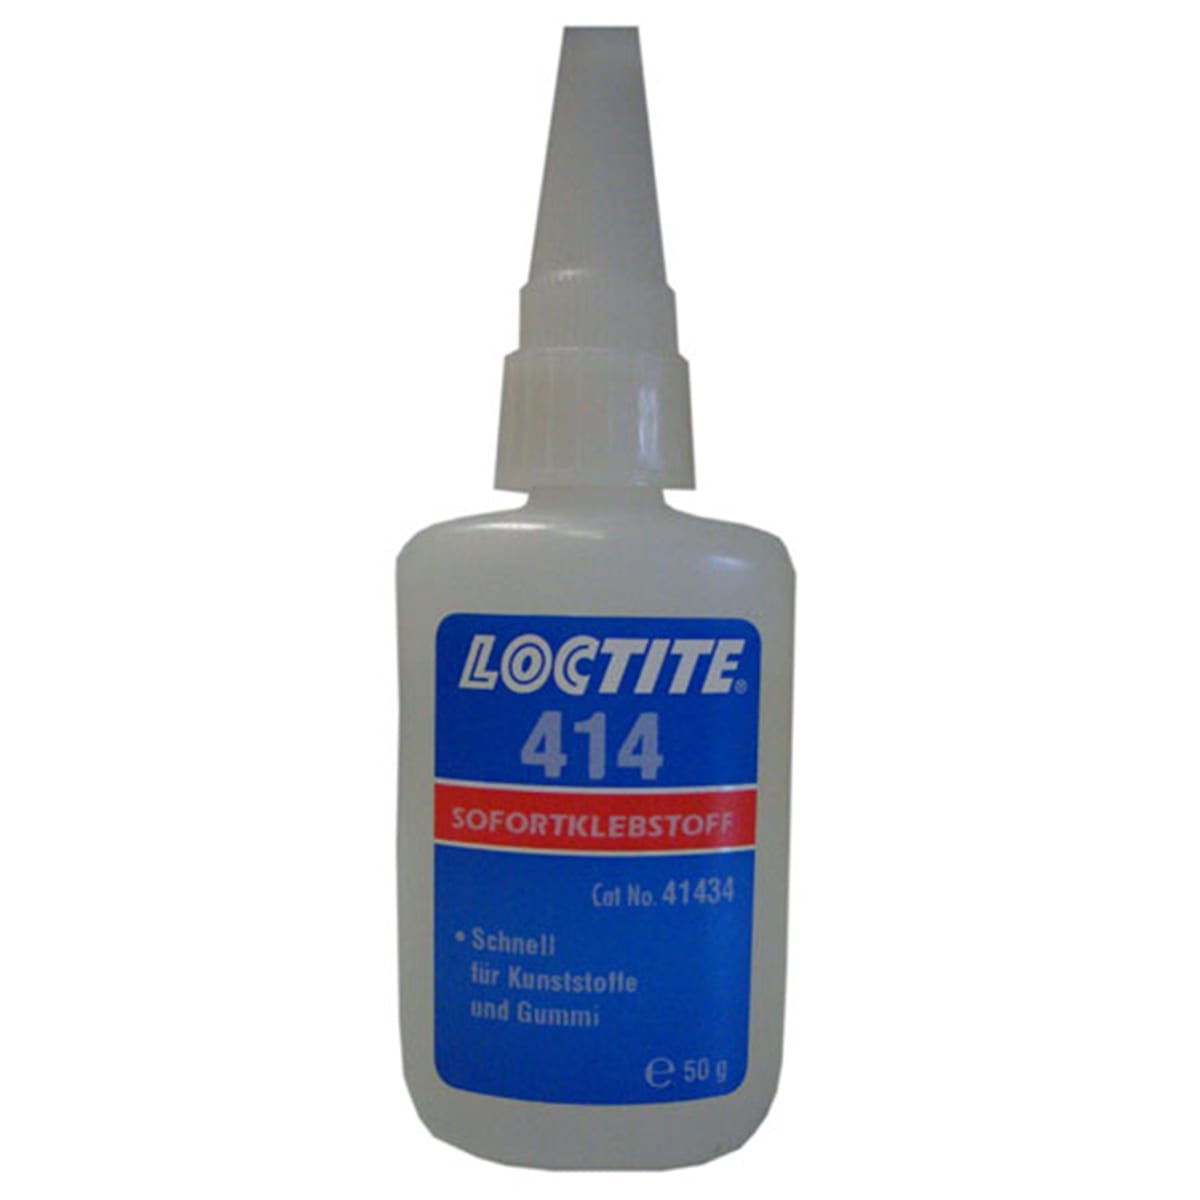 Loctite 406 Cyanacrylat Sofortklebstoff Flasche Inh. 20 g kaufen?